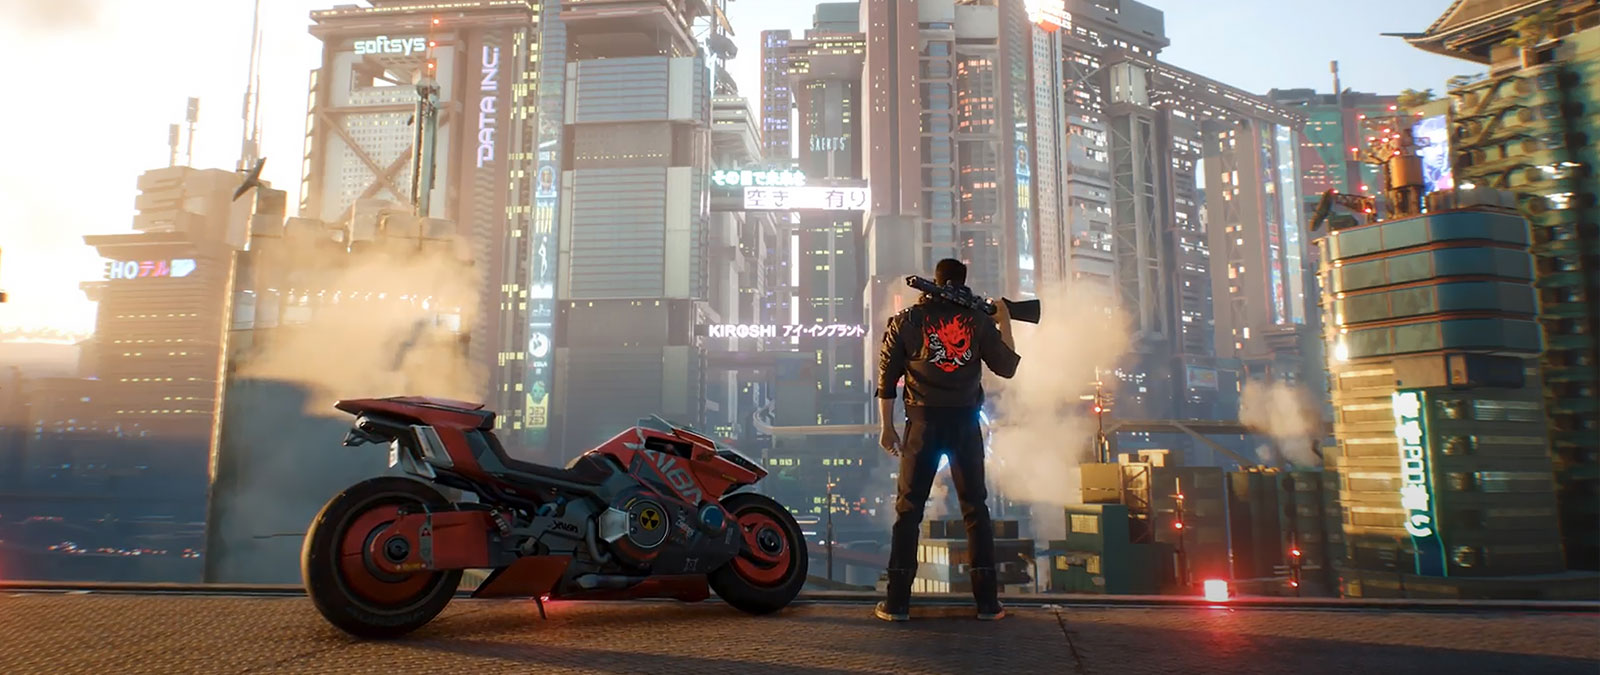 V se uită la Night City cu o pușcă pe umăr în timp ce stă lângă o motocicletă